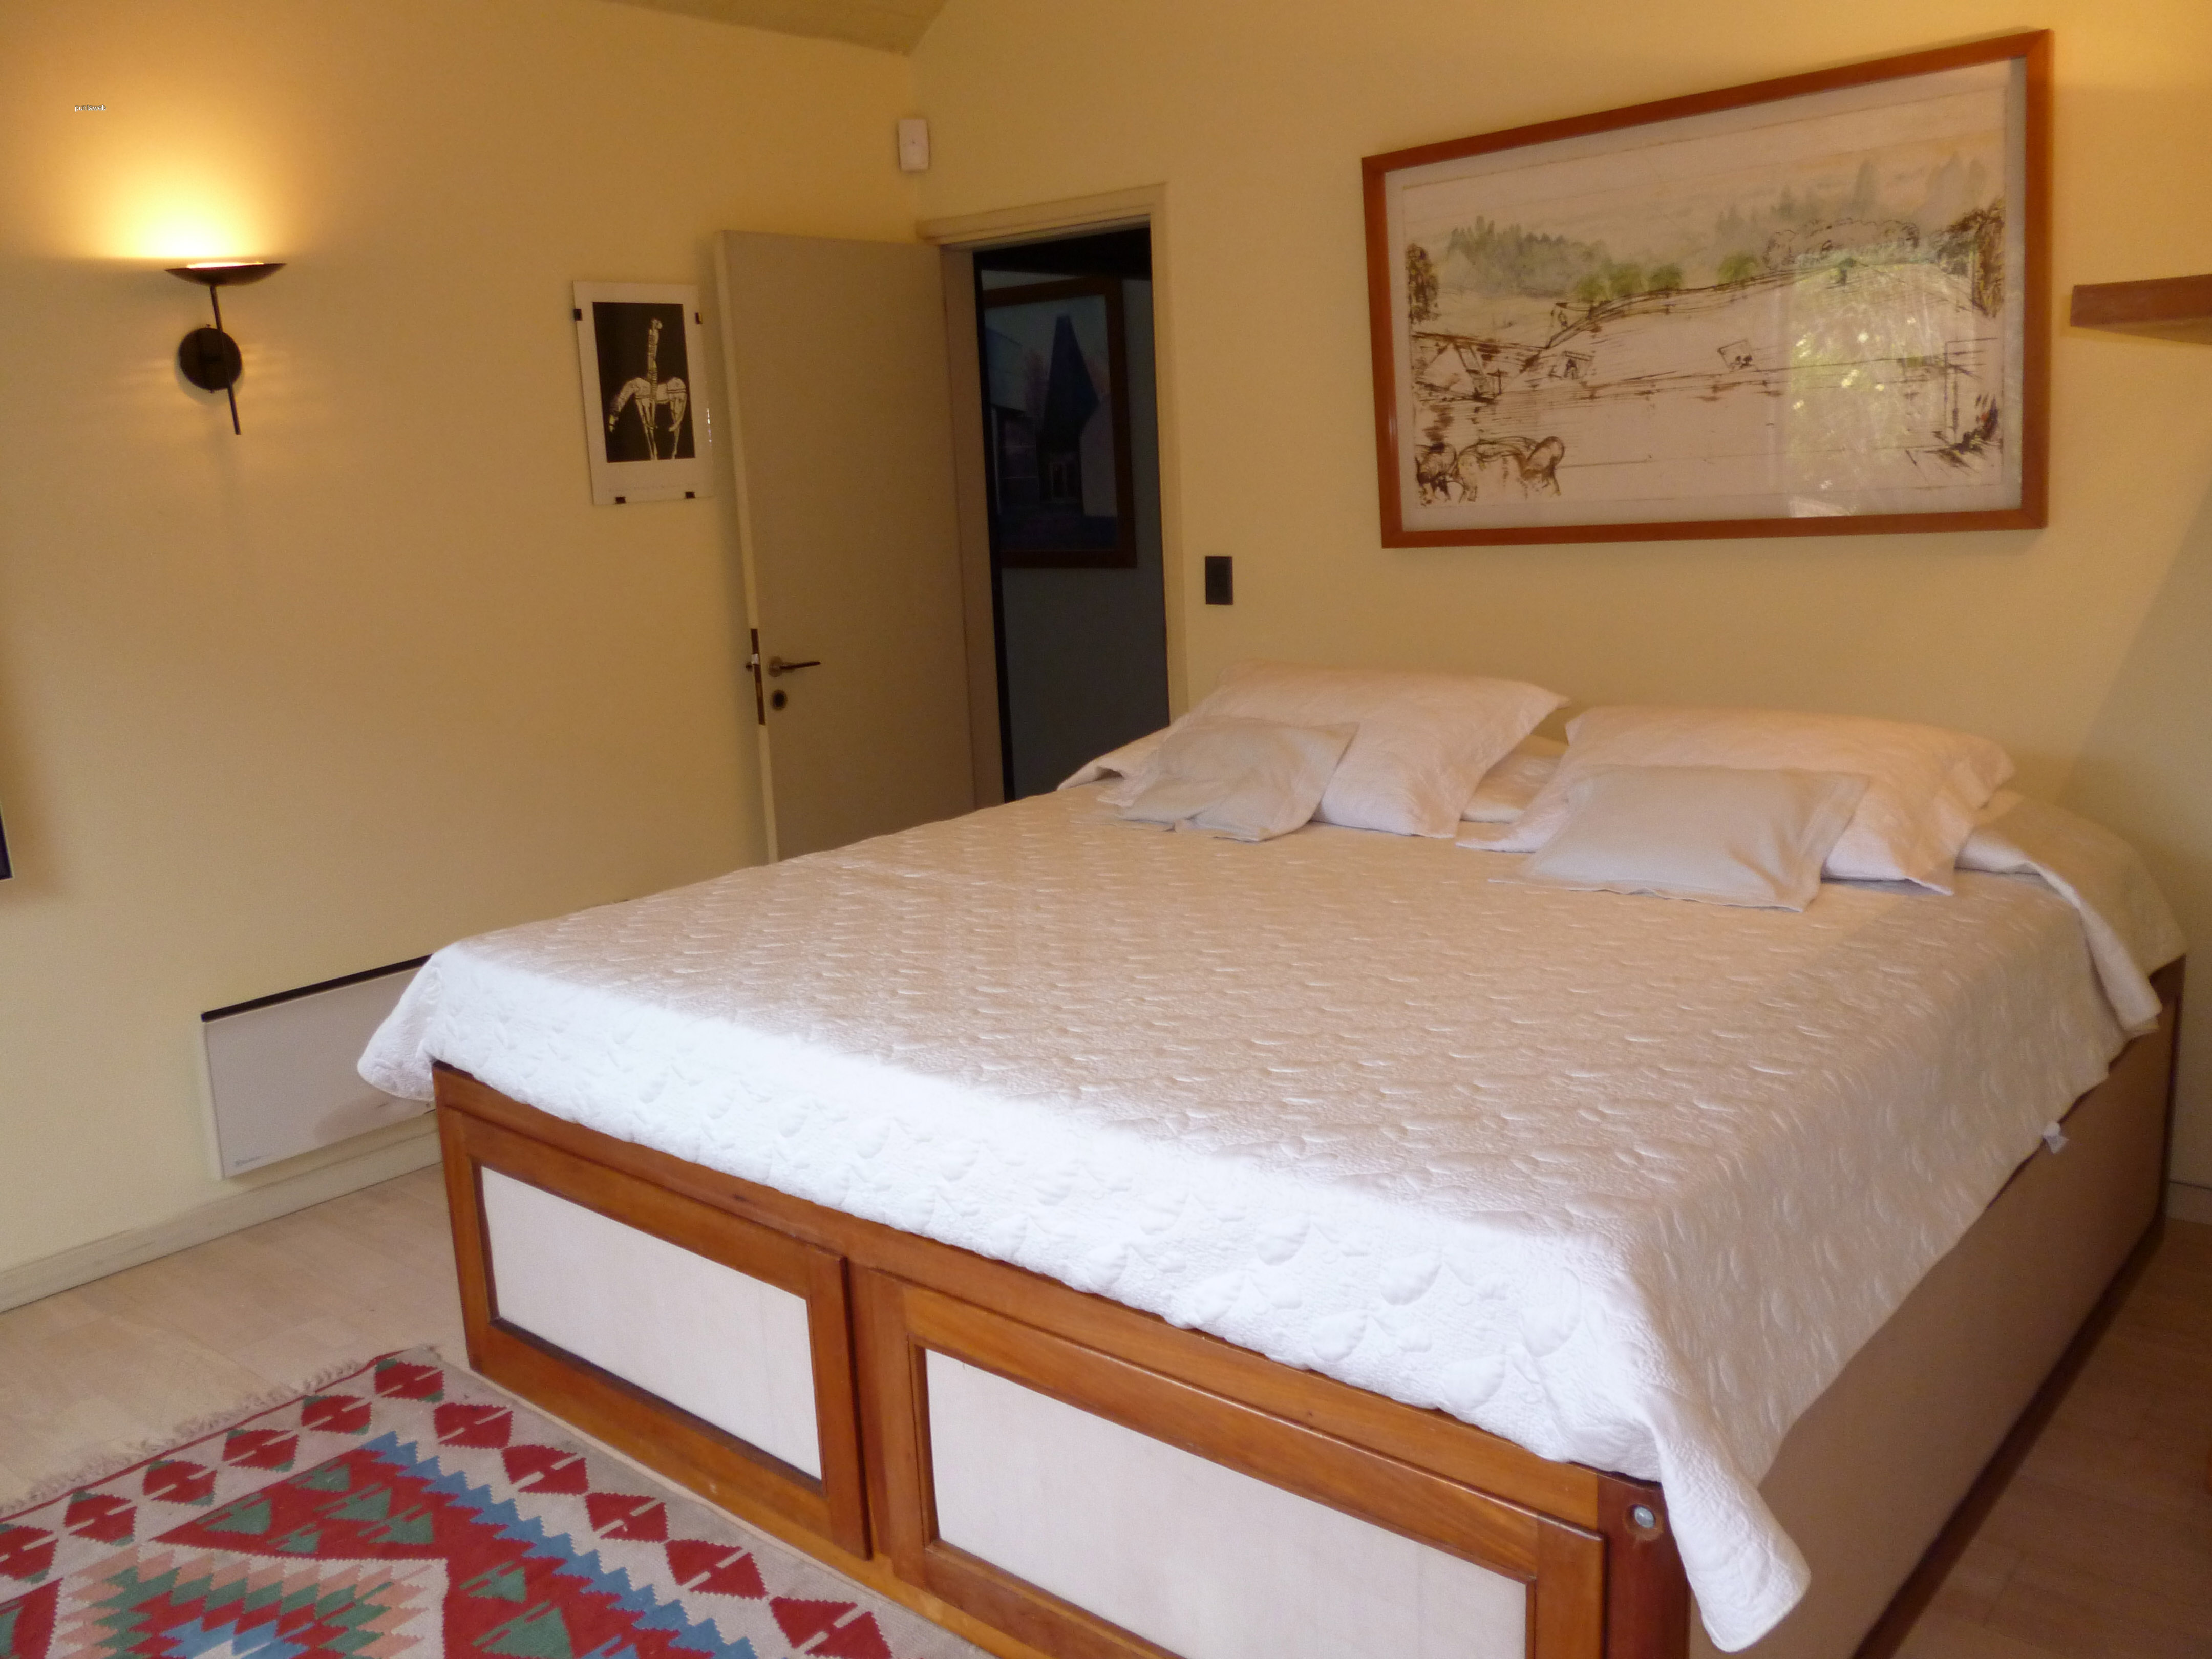 Cuarto dormitorio en suite de excelentes dimensiones, luminosos a toda hora, equipado con cama de dos plazas.